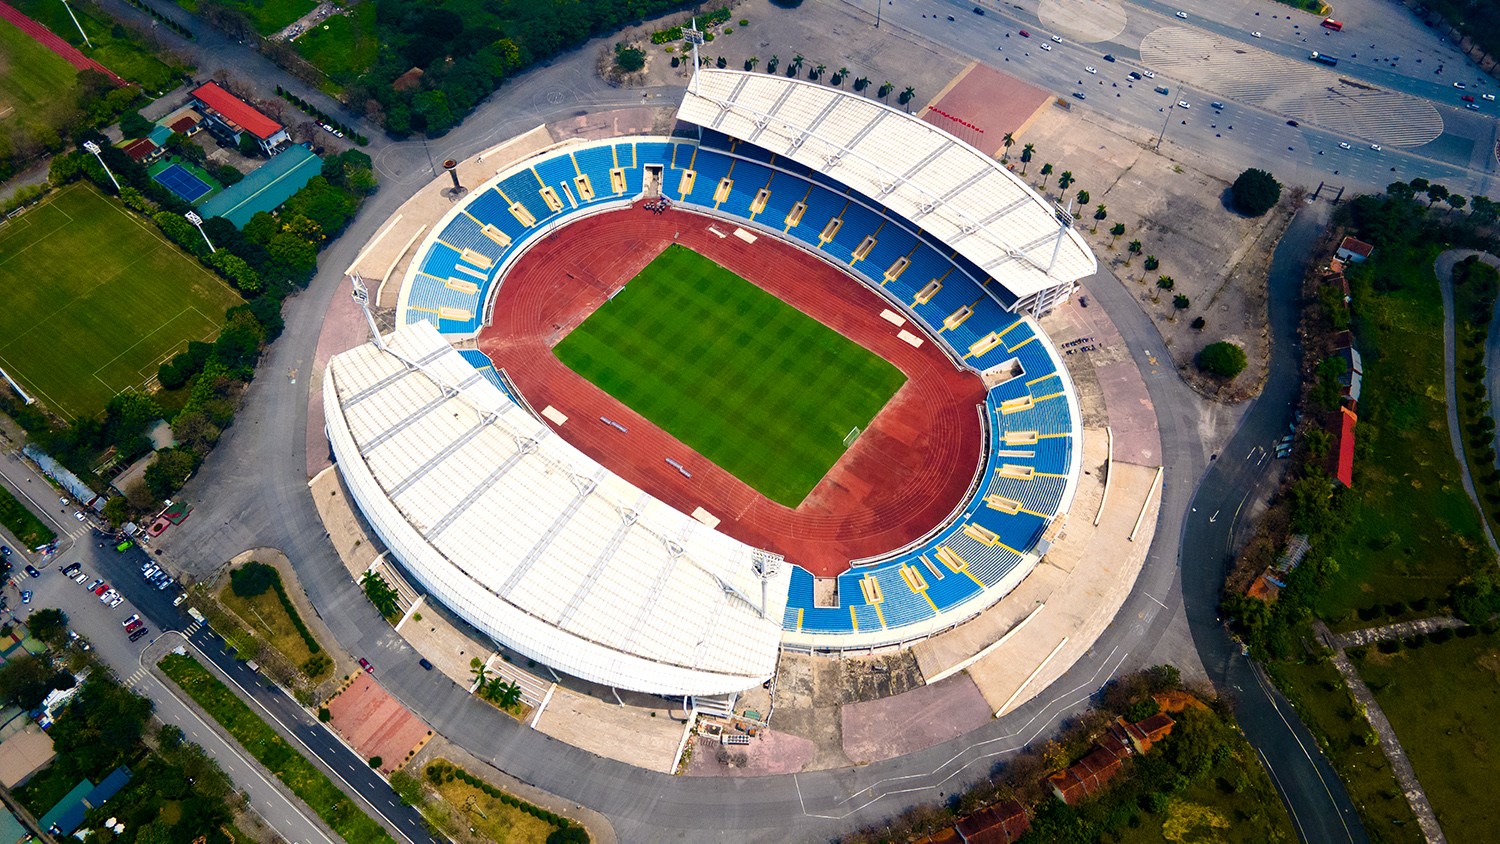 Sân vận động Mỹ Đình là địa điểm thi đấu tiếp theo của đội tuyển bóng đá nam Việt Nam tại vòng loại thứ hai World Cup 2026 khu vực châu Á.